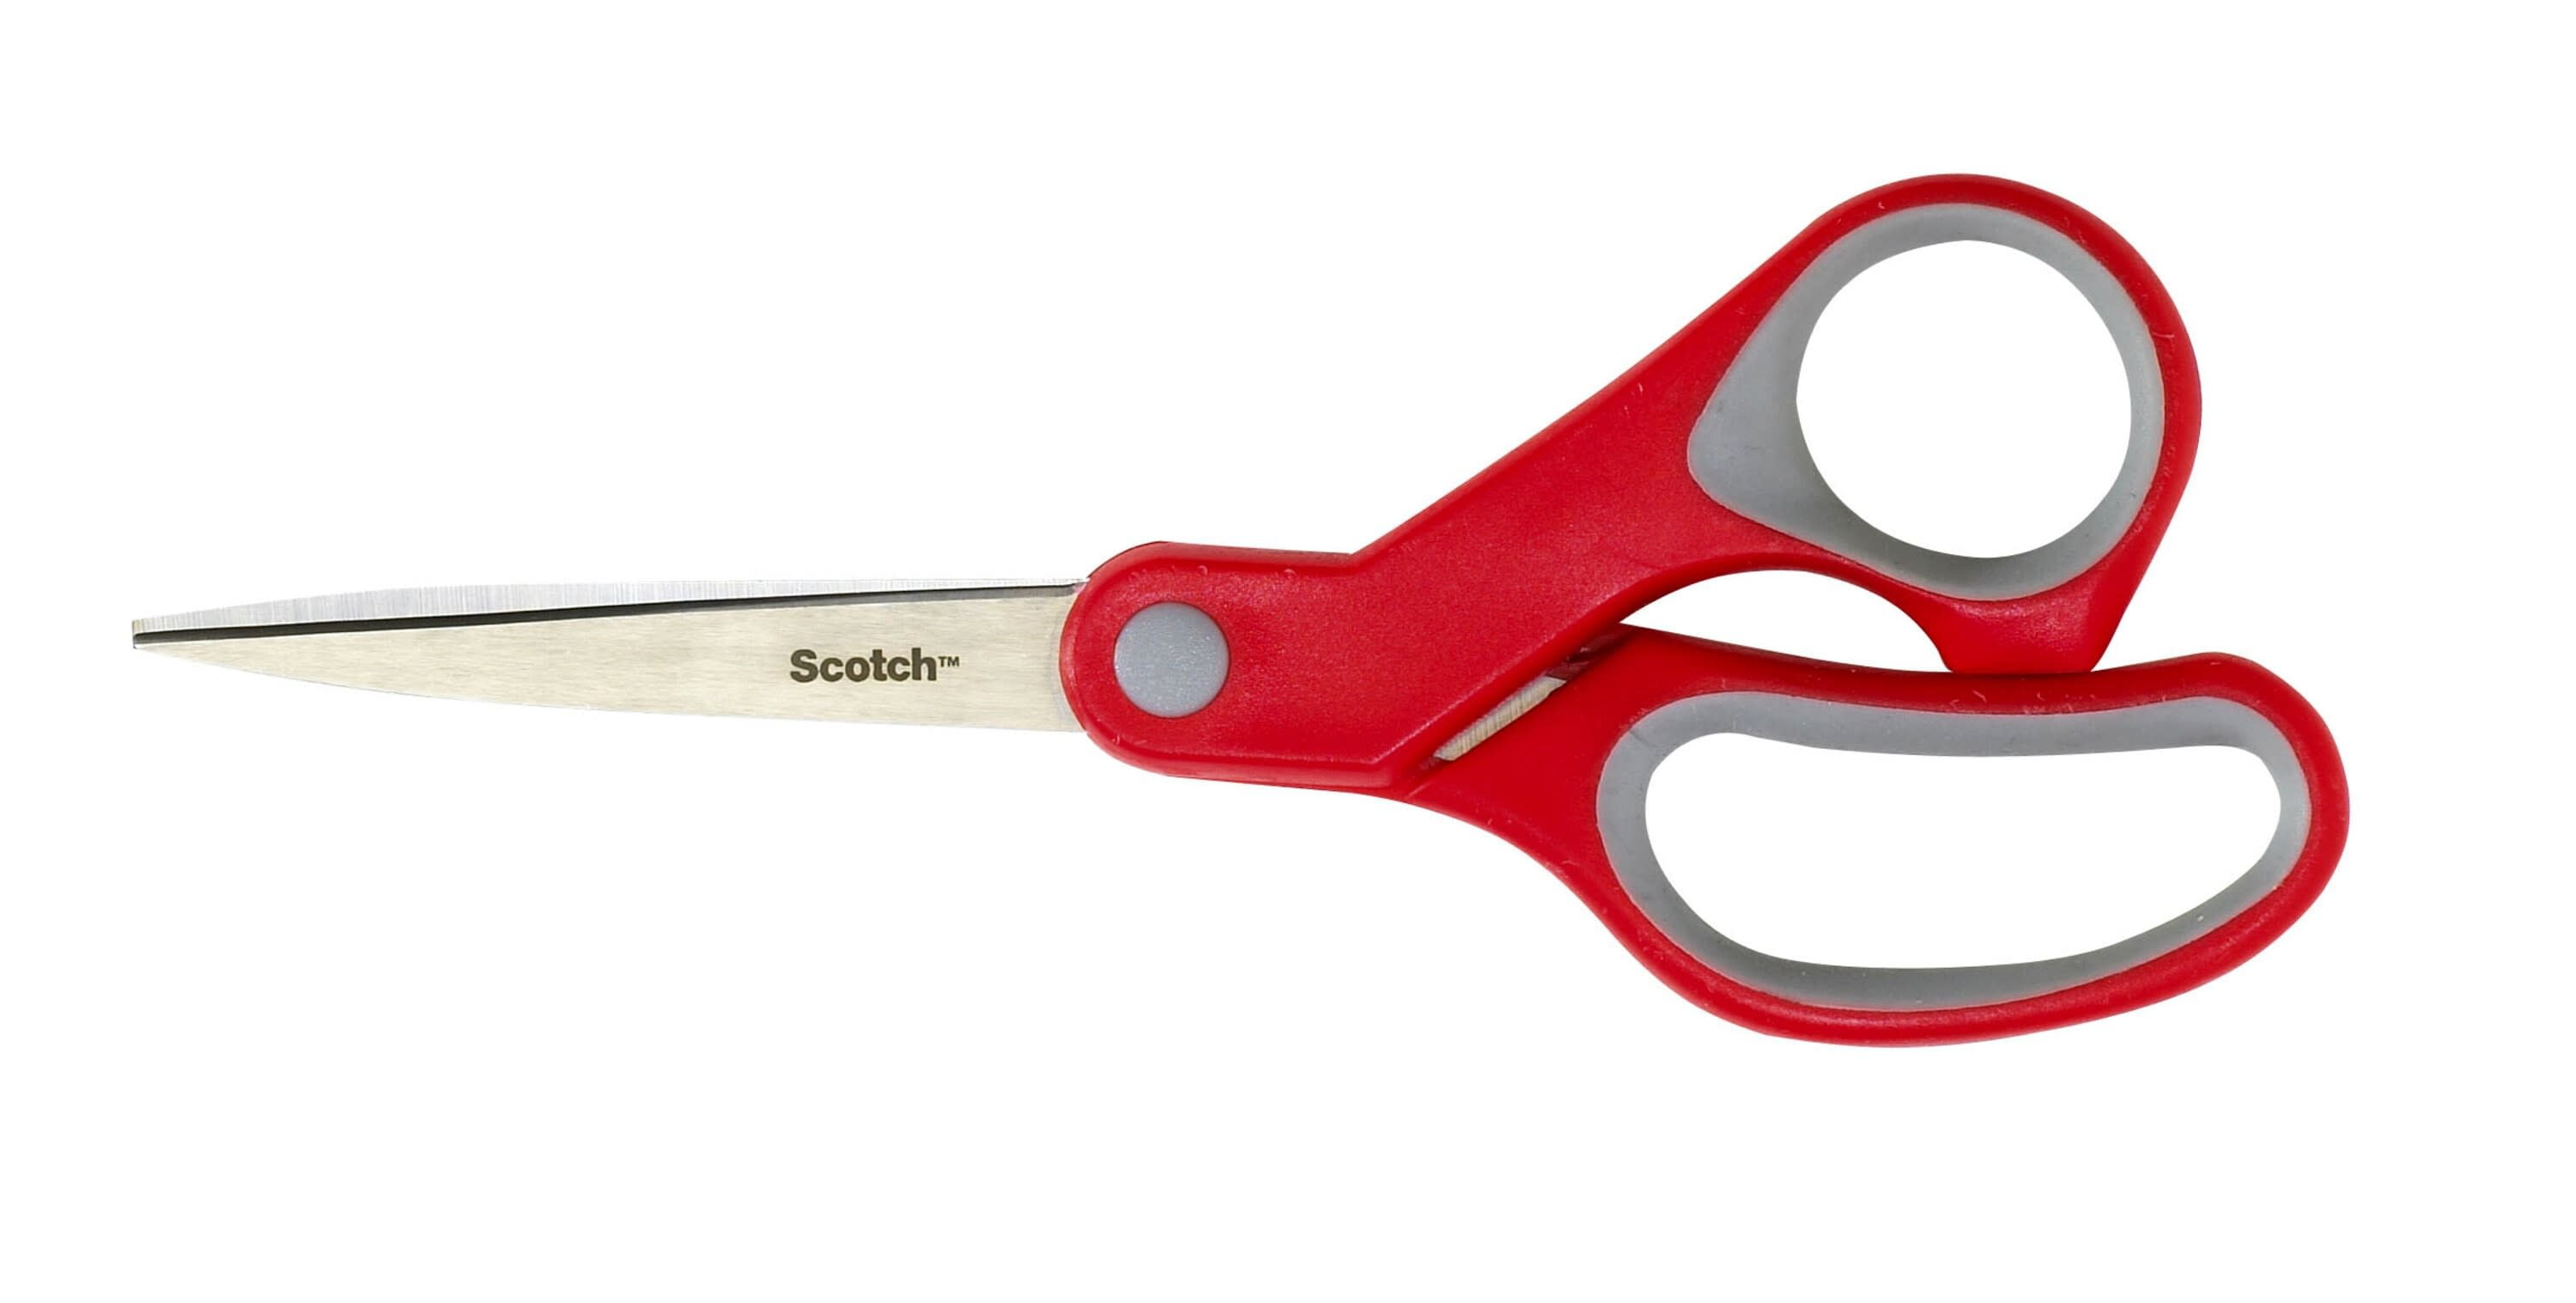 Scotch Detachable Titanium Kitchen Scissors - Red, Scotch™